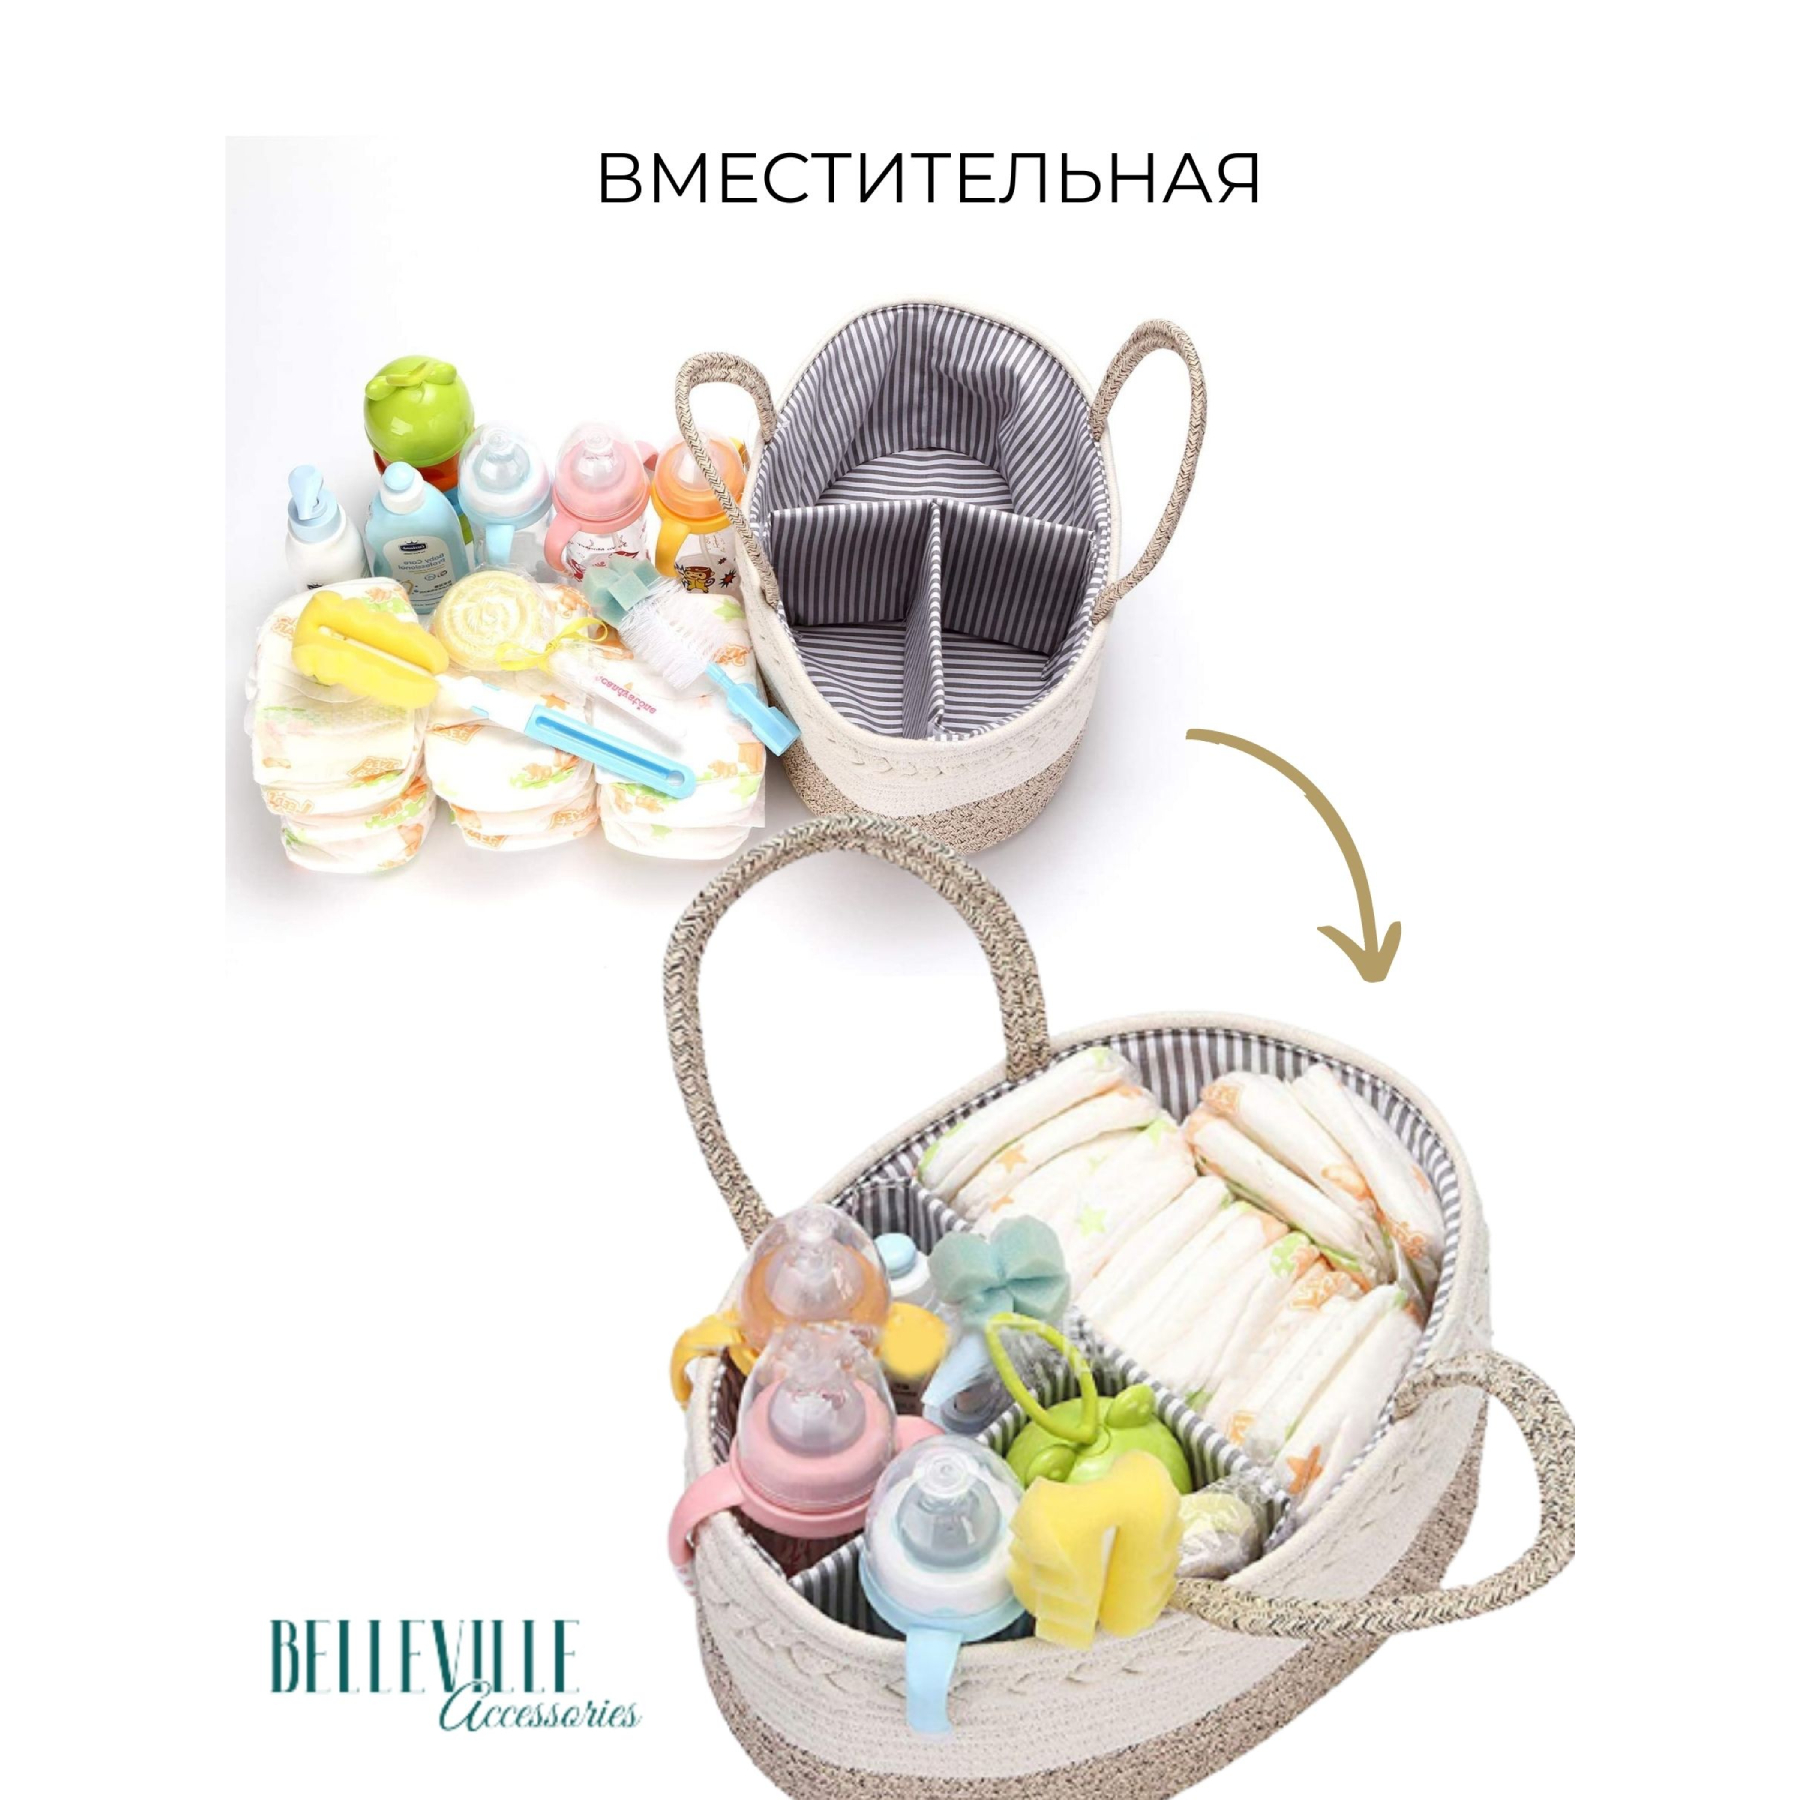 Корзина-органайзер Belleville Accessories для хранения вещей и принадлежностей новорожденного - фото 10